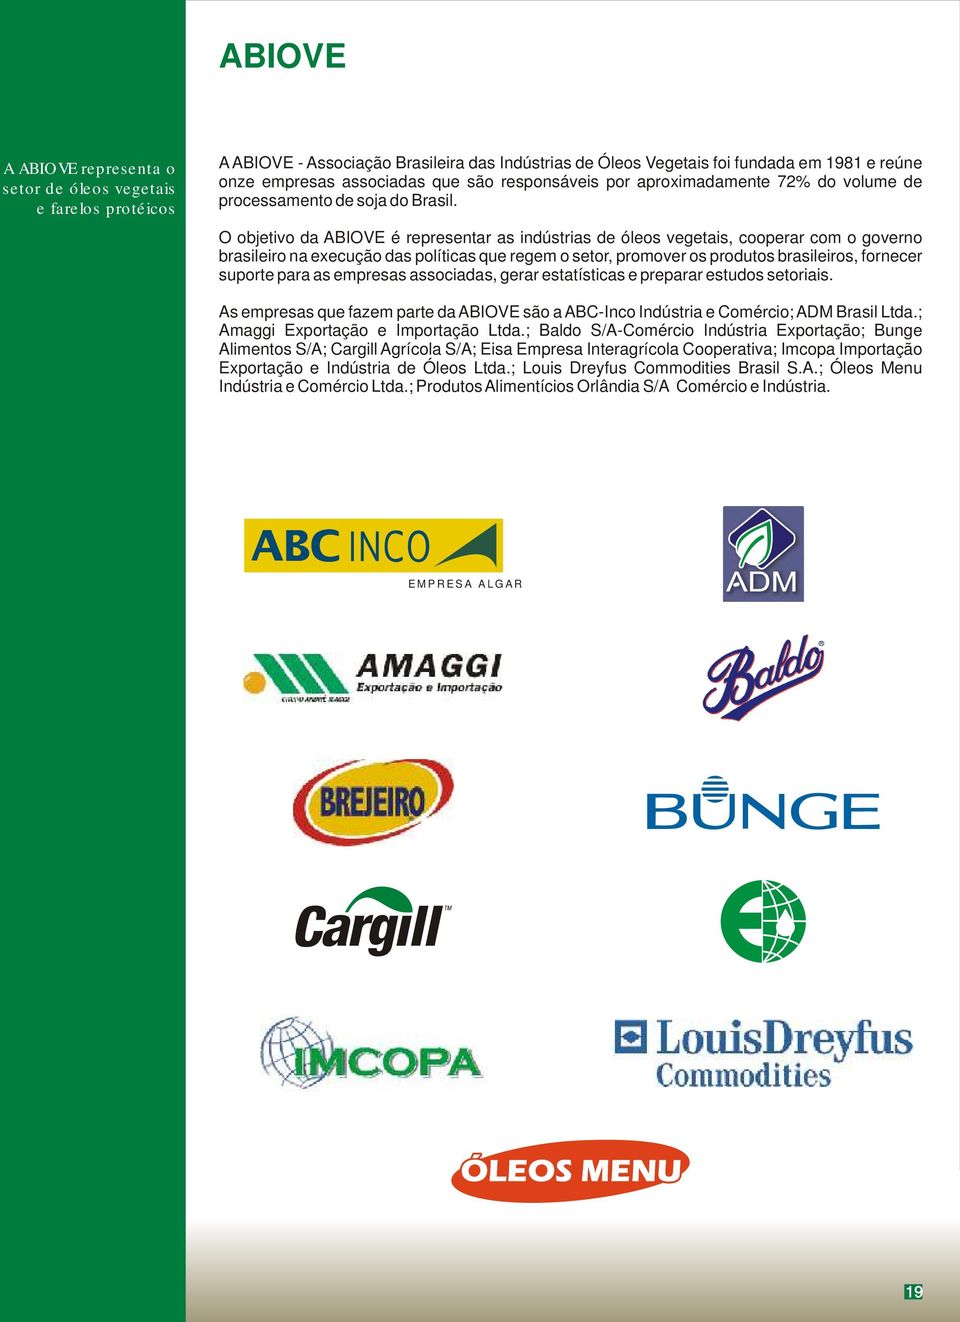 O objetivo da ABIOVE é representar as indústrias de óleos vegetais, cooperar com o governo brasileiro na execução das políticas que regem o setor, promover os produtos brasileiros, fornecer suporte